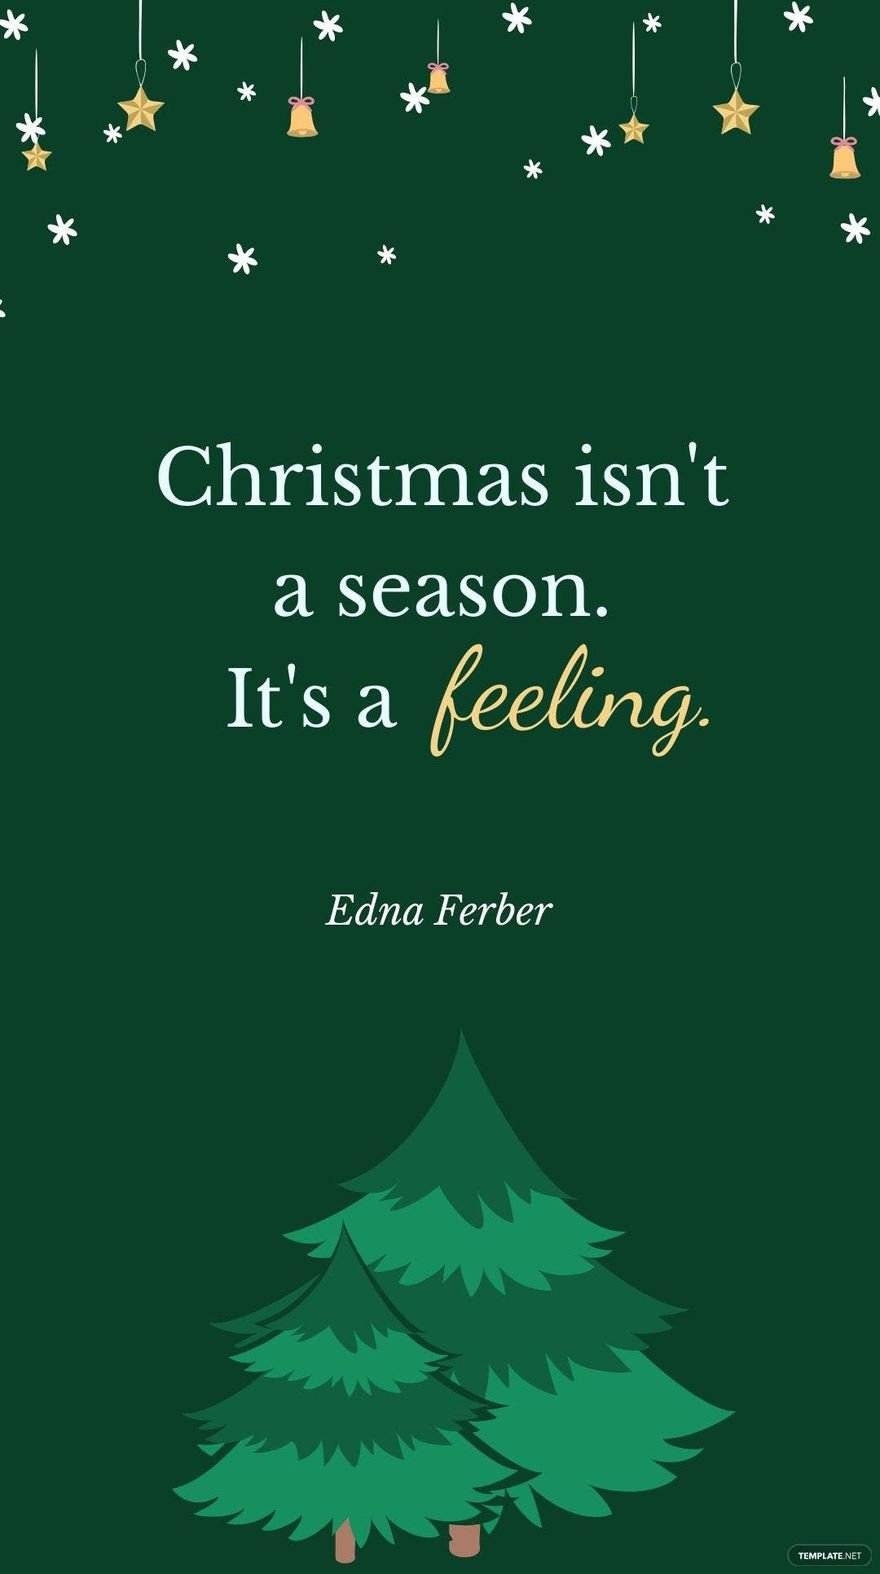 Free Edna Ferber - Christmas isn't a season. It's a feeling. in JPG